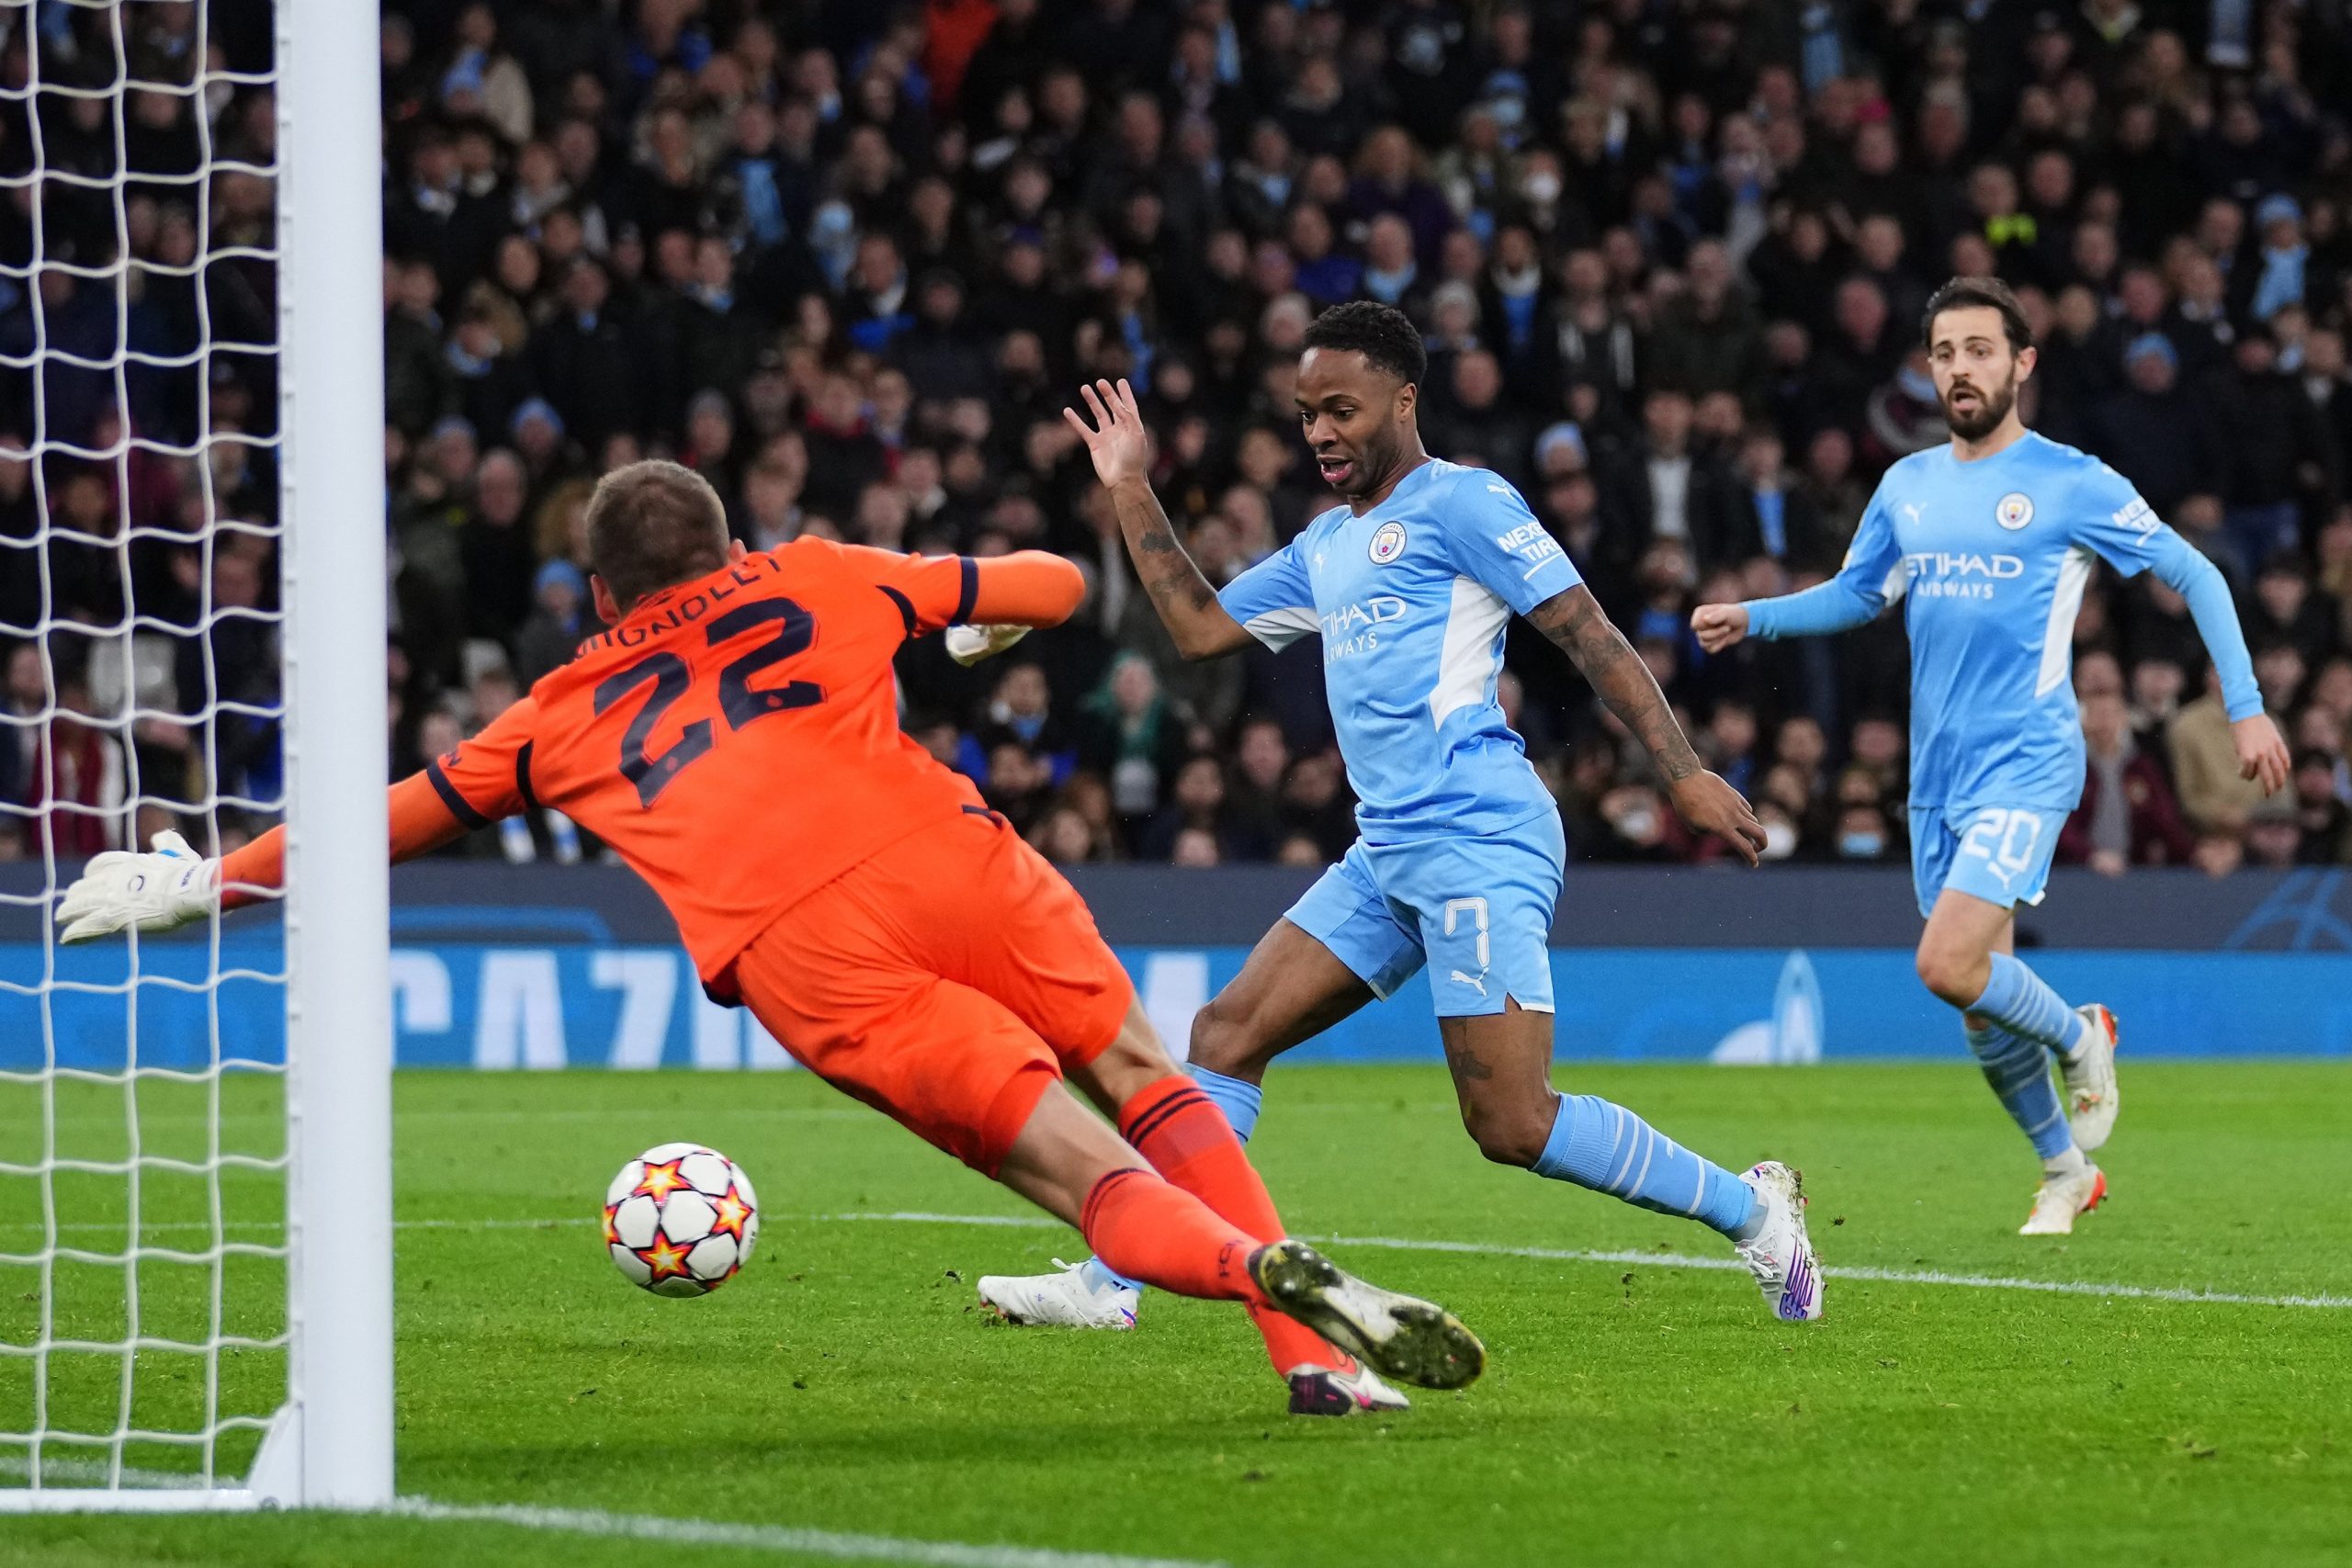 Jogando na Inglaterra,o Manchester City bateu o Club Brugge por 4 x 1,em duelo válido pela 4ª rodada da Liga dos Campeões